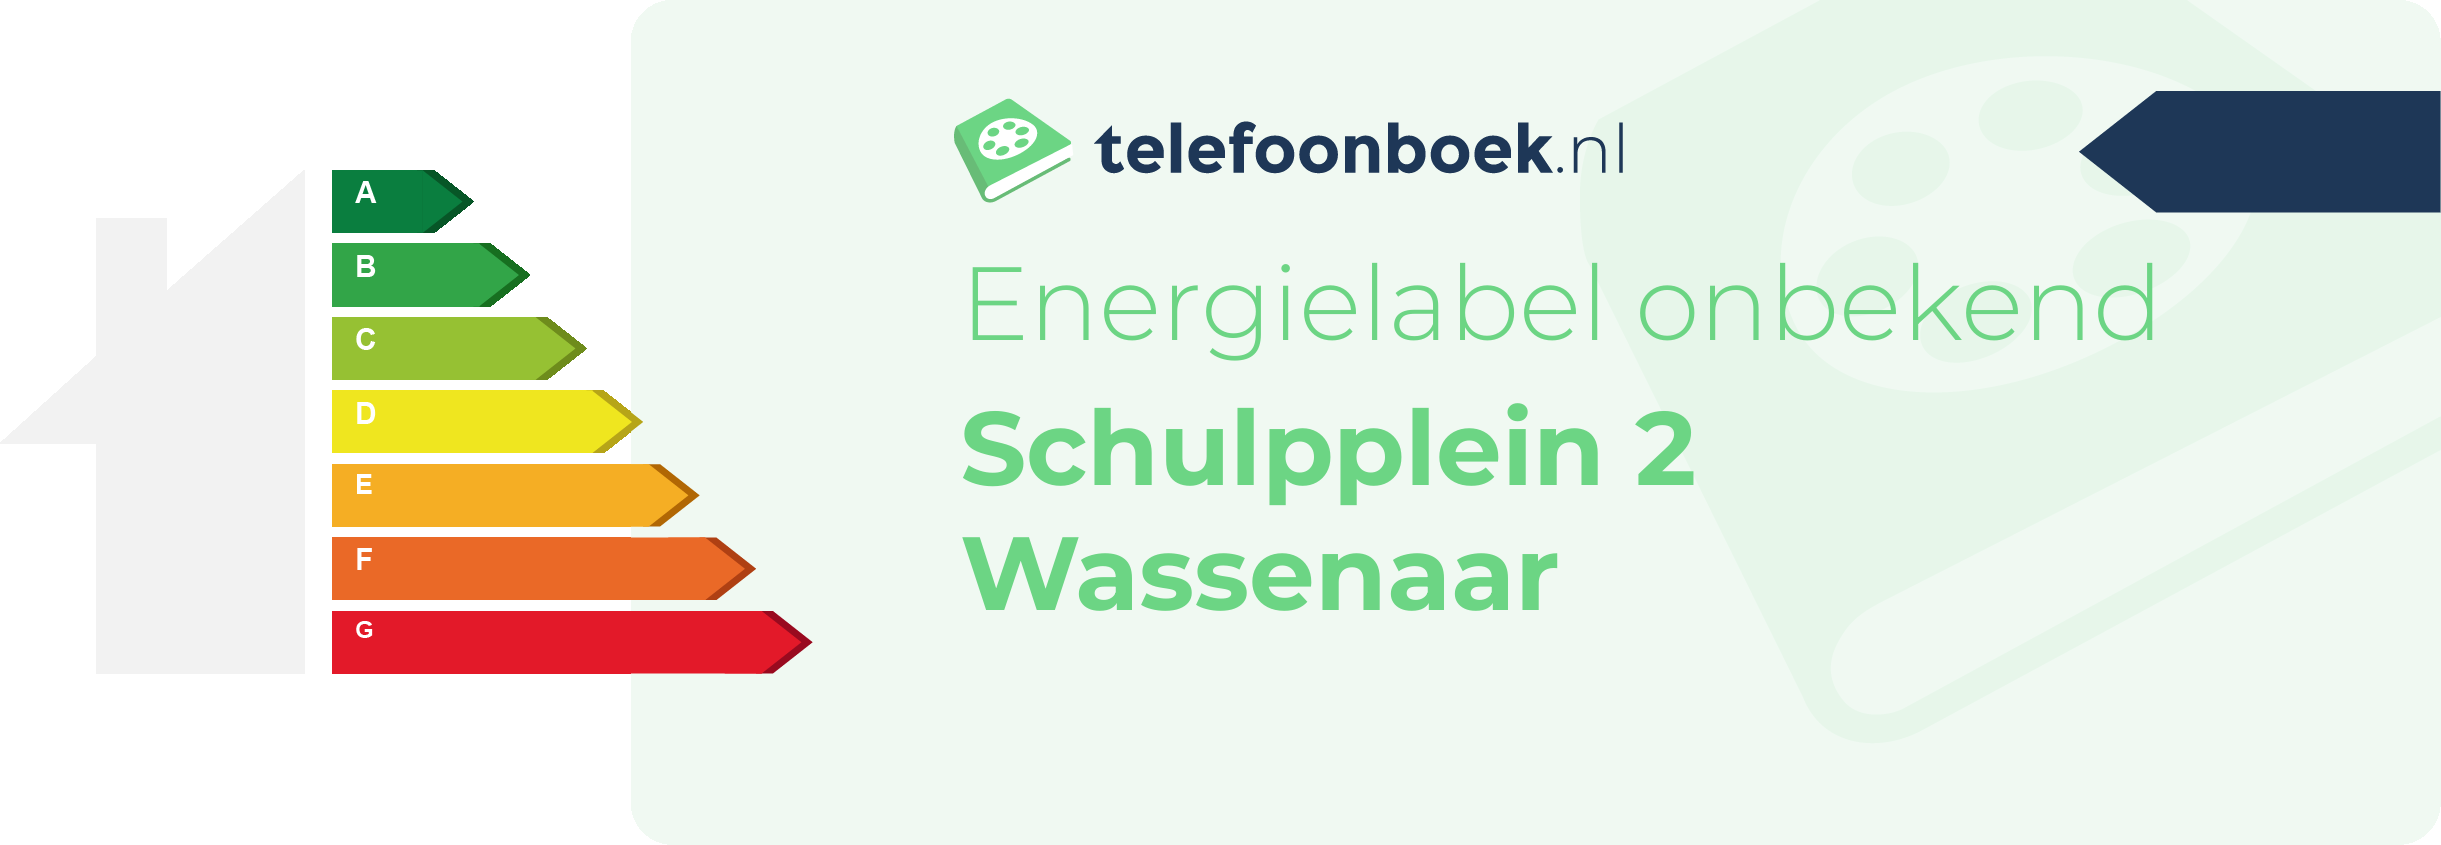 Energielabel Schulpplein 2 Wassenaar